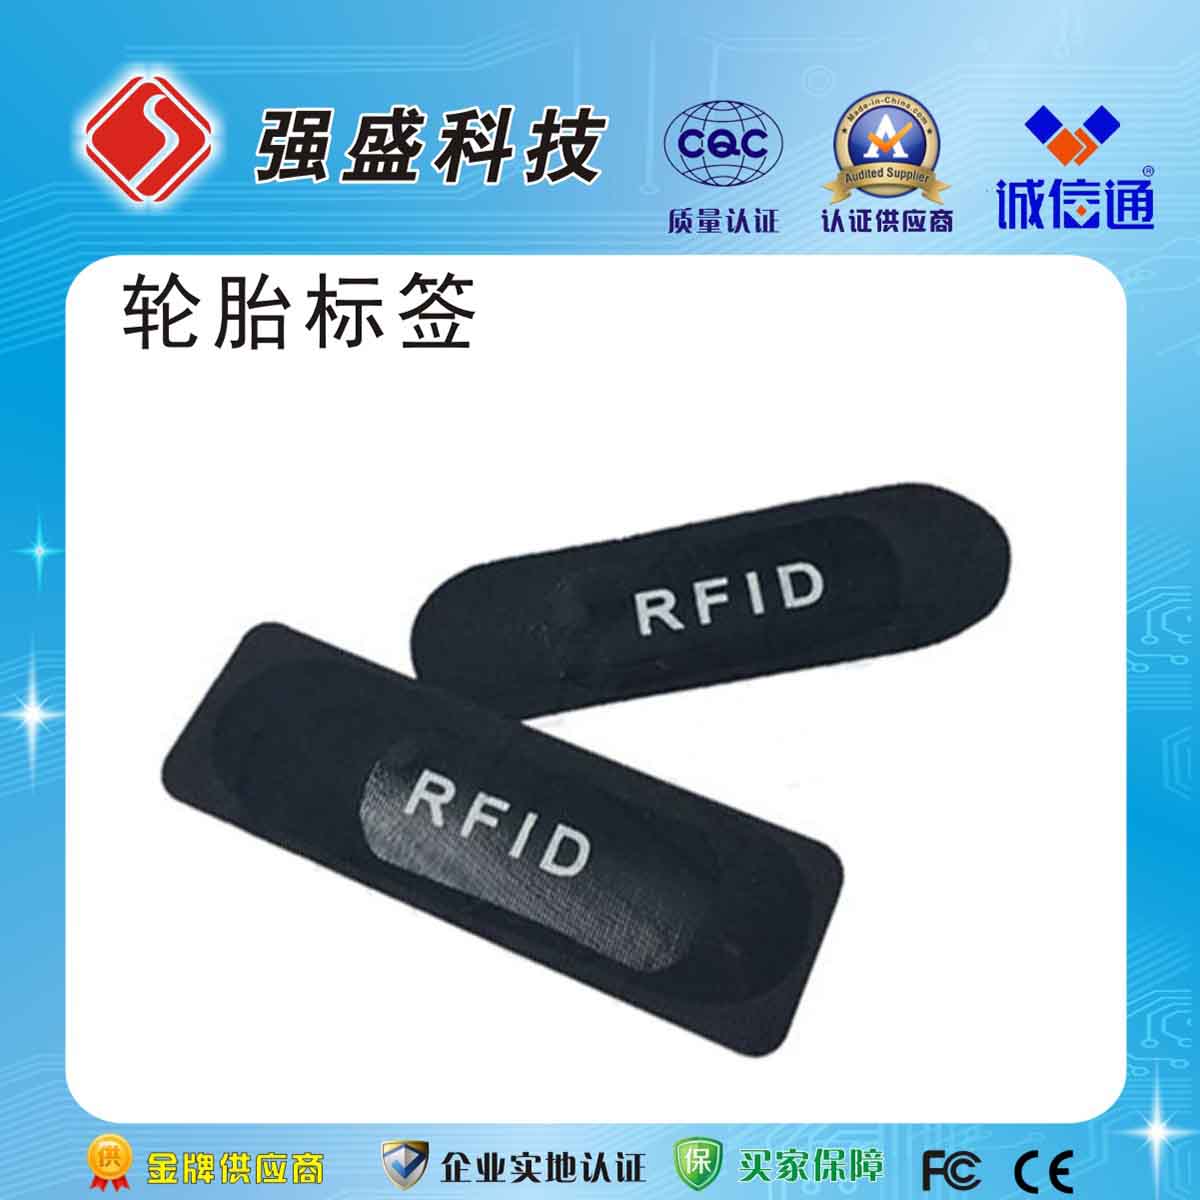 广州番禺RFID**高频橡胶轮胎电子标签RIFD轮胎标签